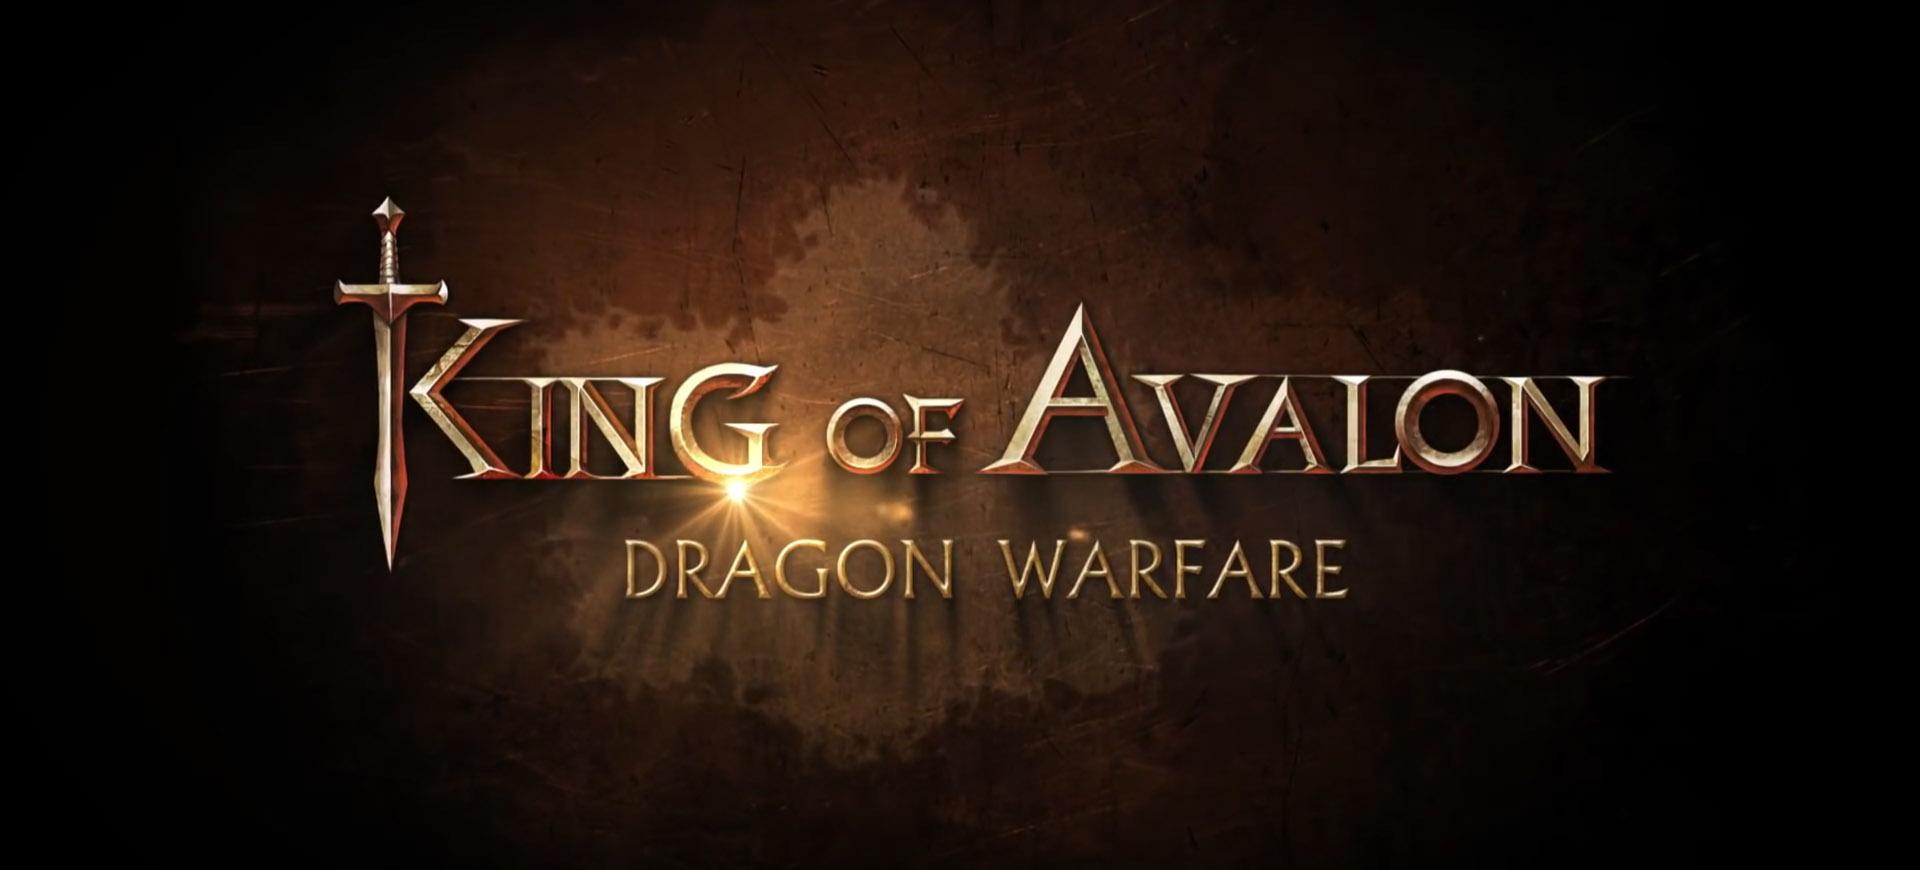 King of Avalon: Dragon Warfare chính thức có mặt trên IOS và Android – Tin Game Mobile